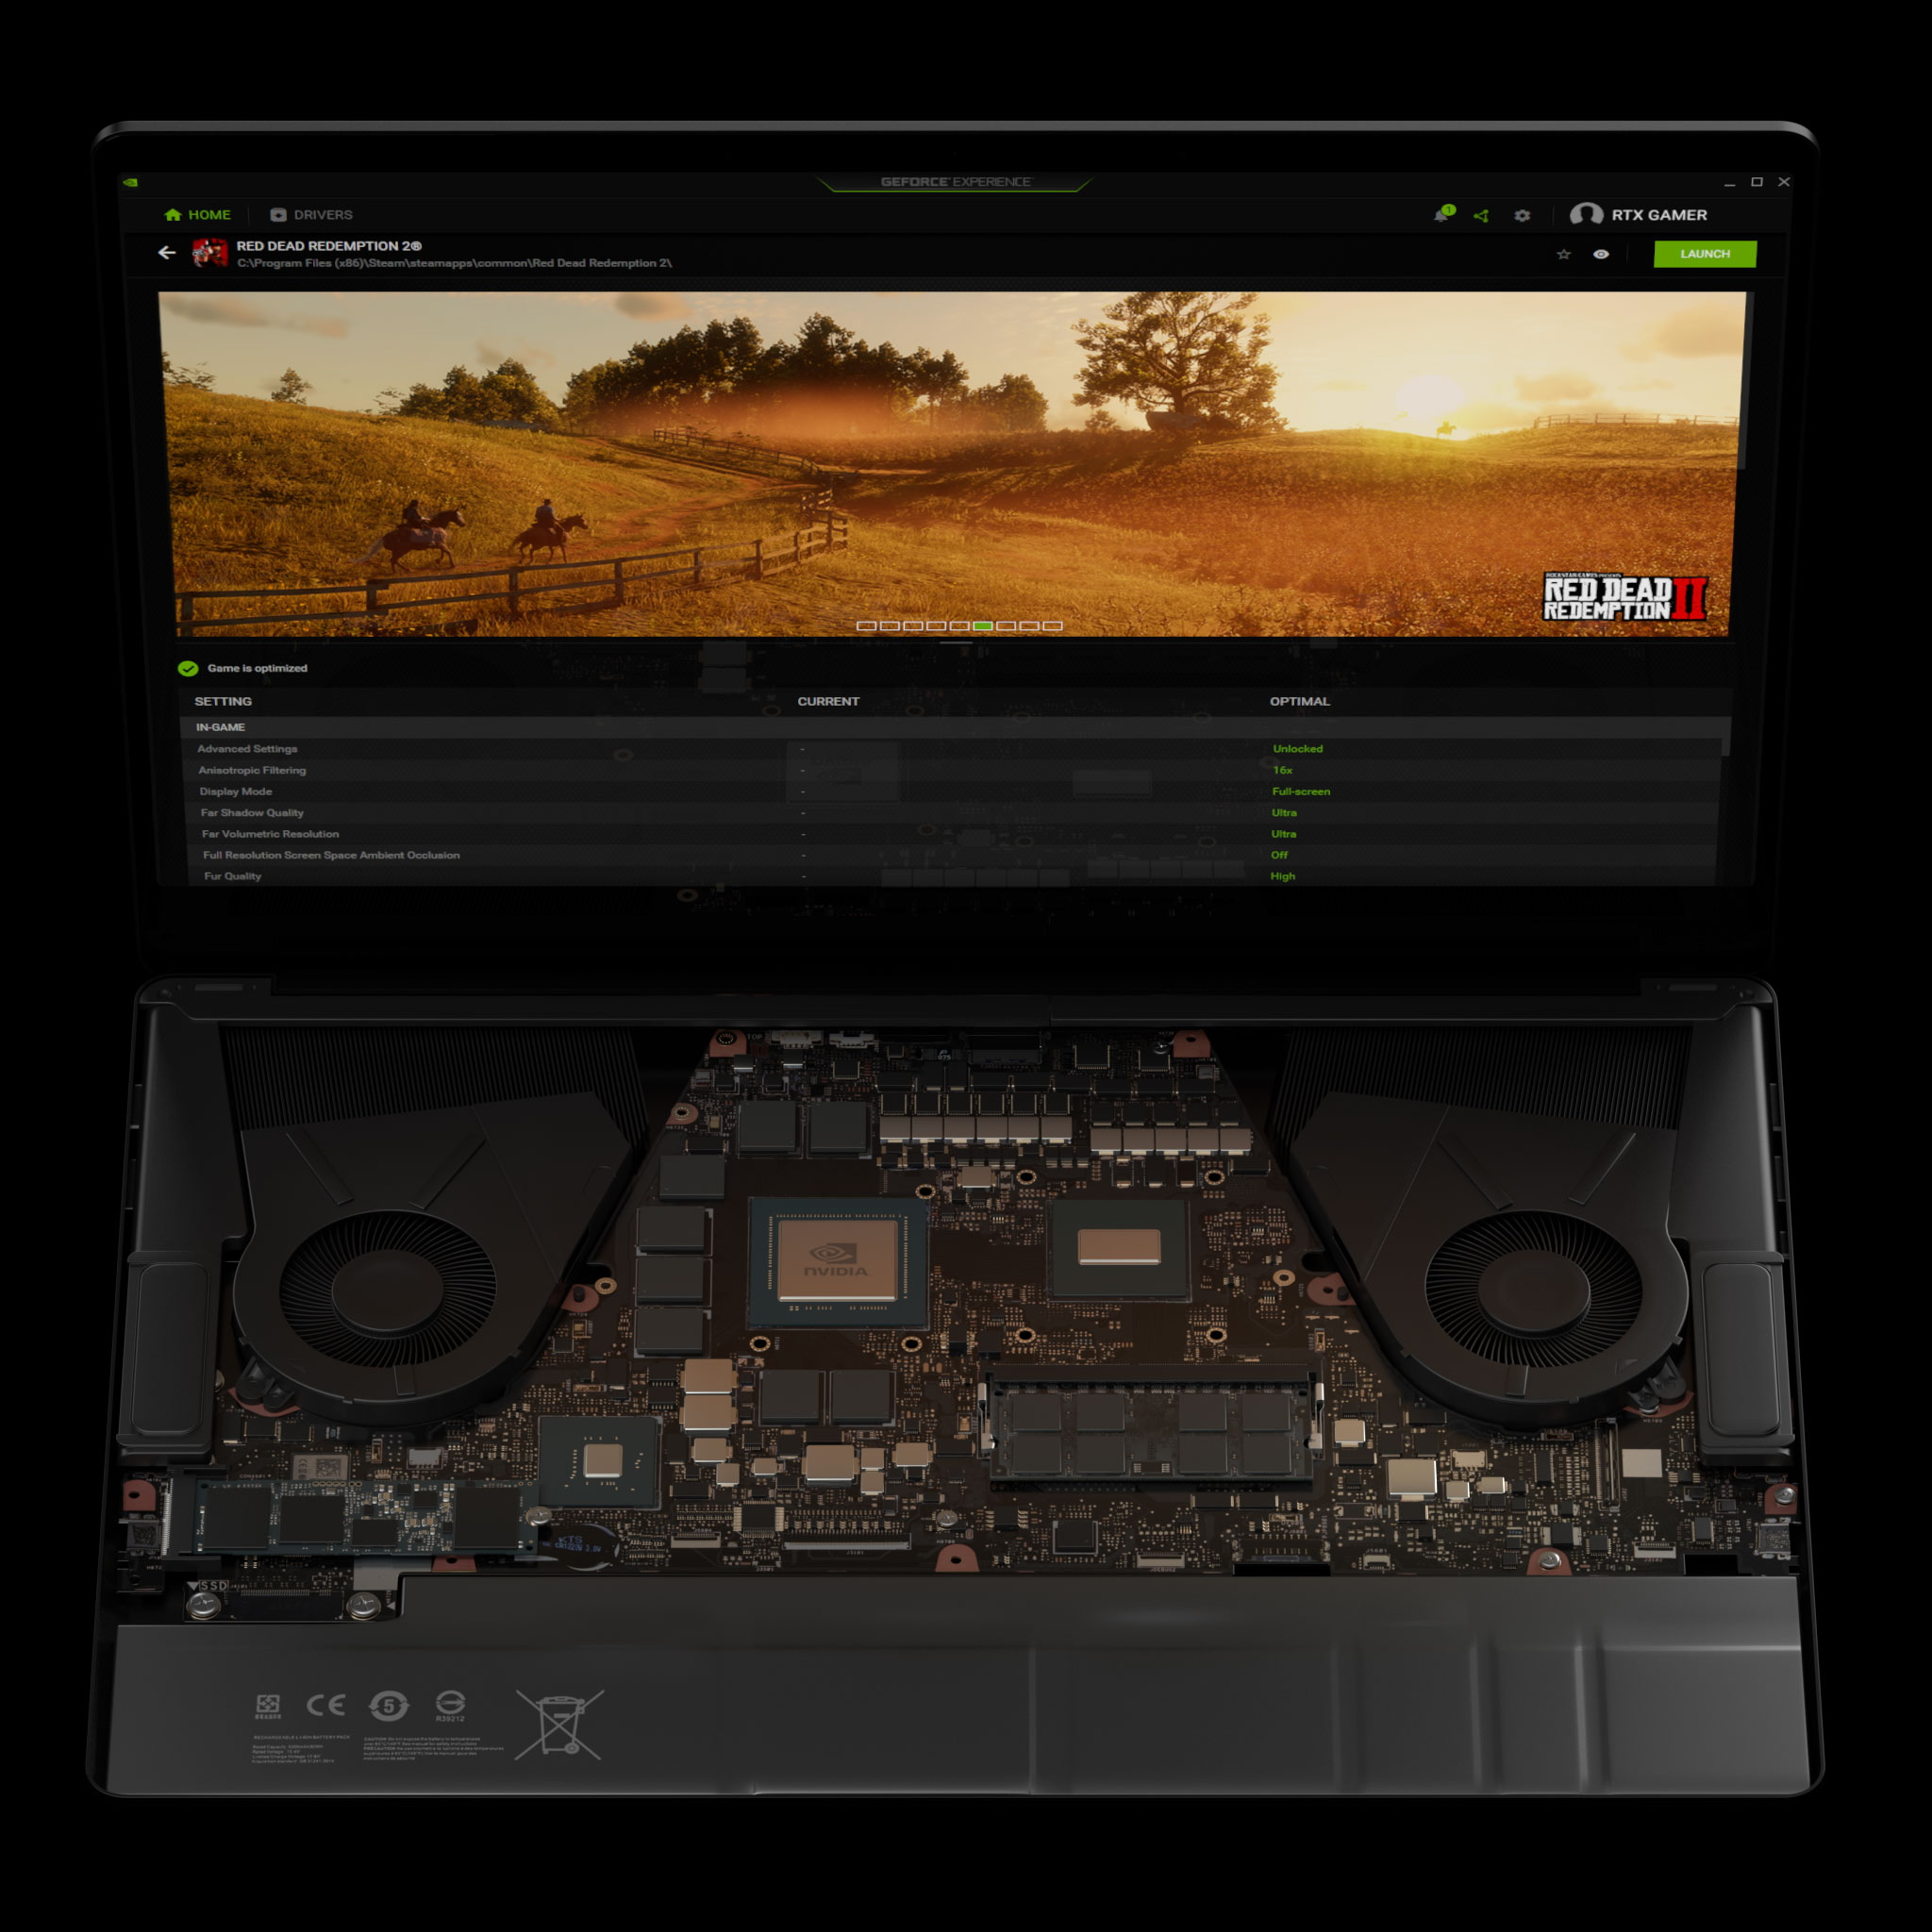 Portátil GeForce con configuraciones óptimas de juego de Max-Q en GeForce Experience para Red Dead Redemption 2